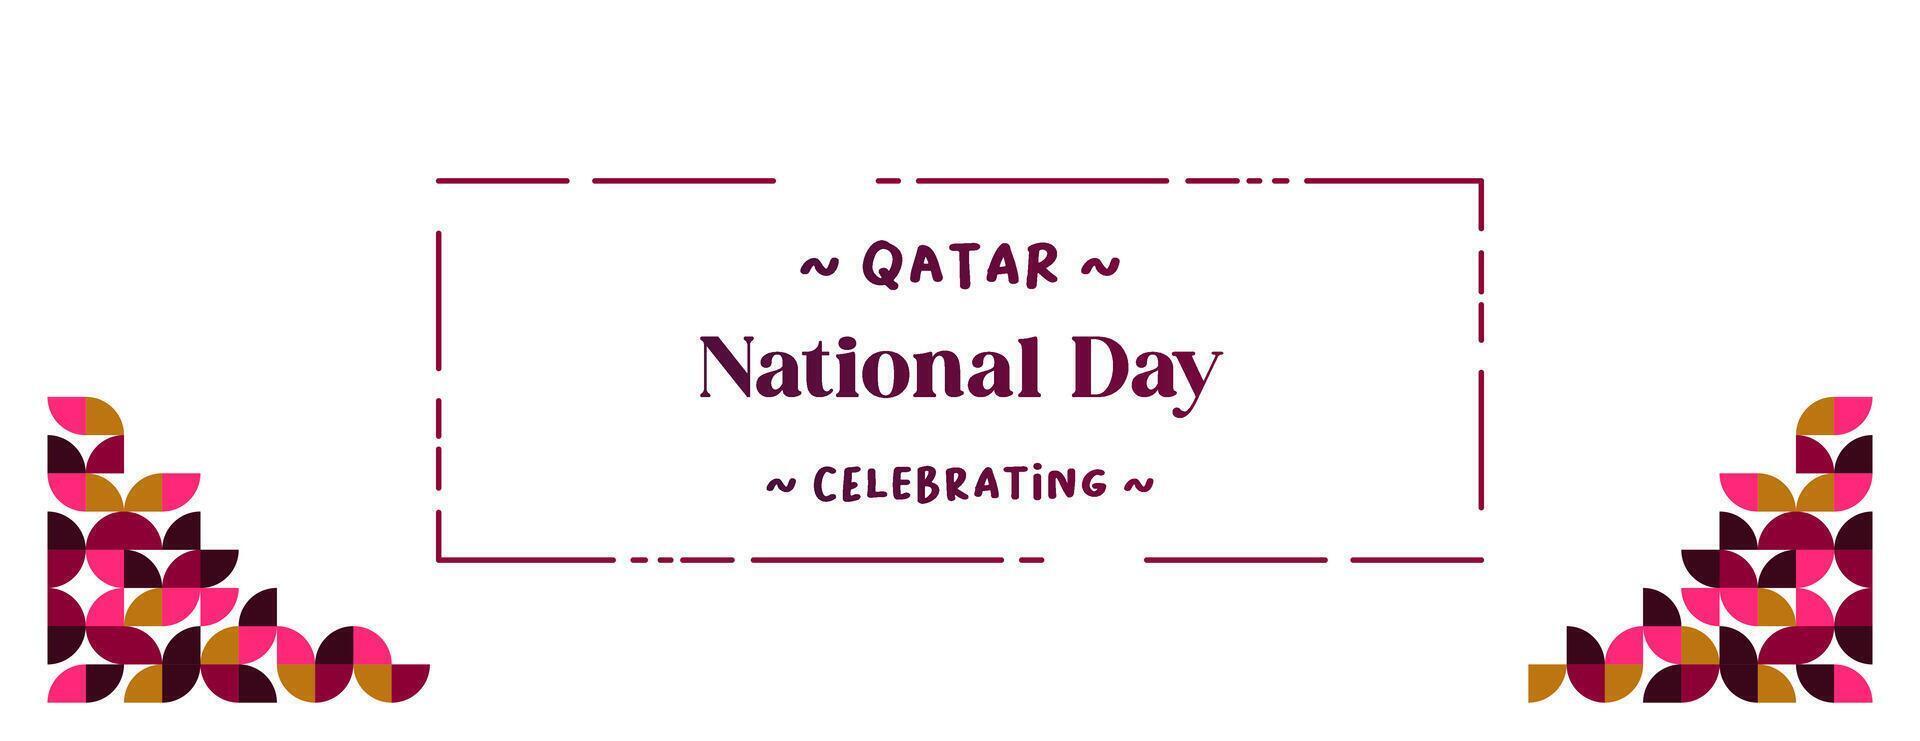 Katar National Tag Banner im bunt modern geometrisch Stil. Katar National Unabhängigkeit Tag Gruß Karte Startseite mit Typografie. Vektor Illustration zum National Urlaub Feier Party